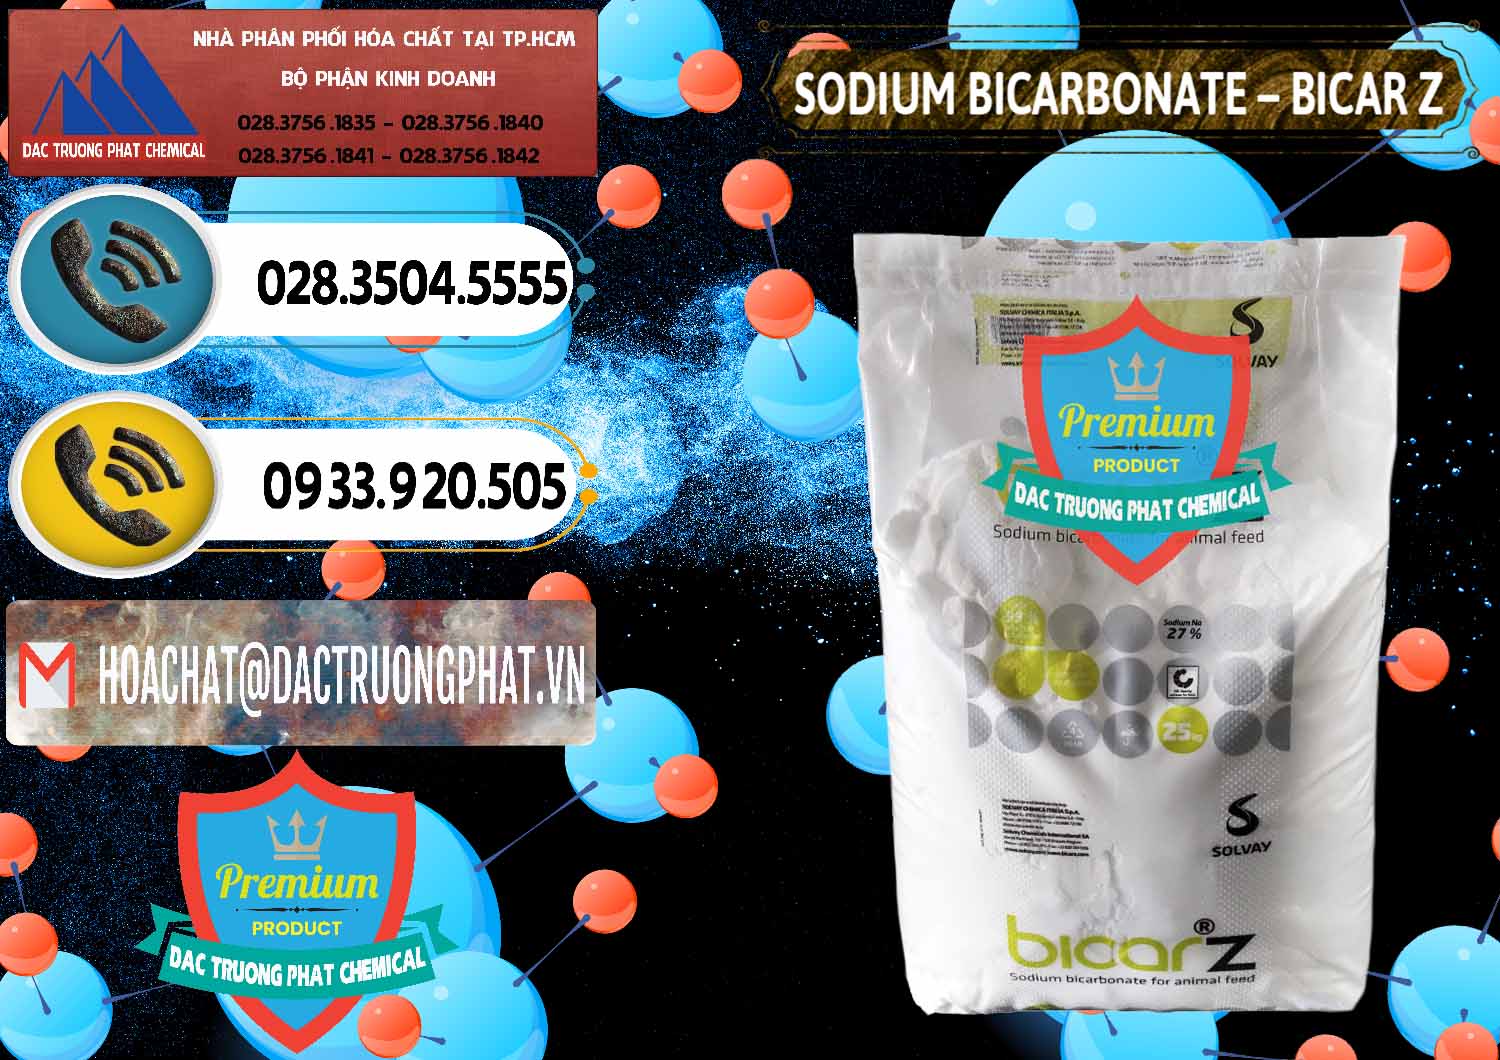 Bán ( cung cấp ) Sodium Bicarbonate – NaHCO3 Bicar Z Ý Italy Solvay - 0139 - Nơi chuyên cung ứng ( phân phối ) hóa chất tại TP.HCM - hoachatdetnhuom.vn